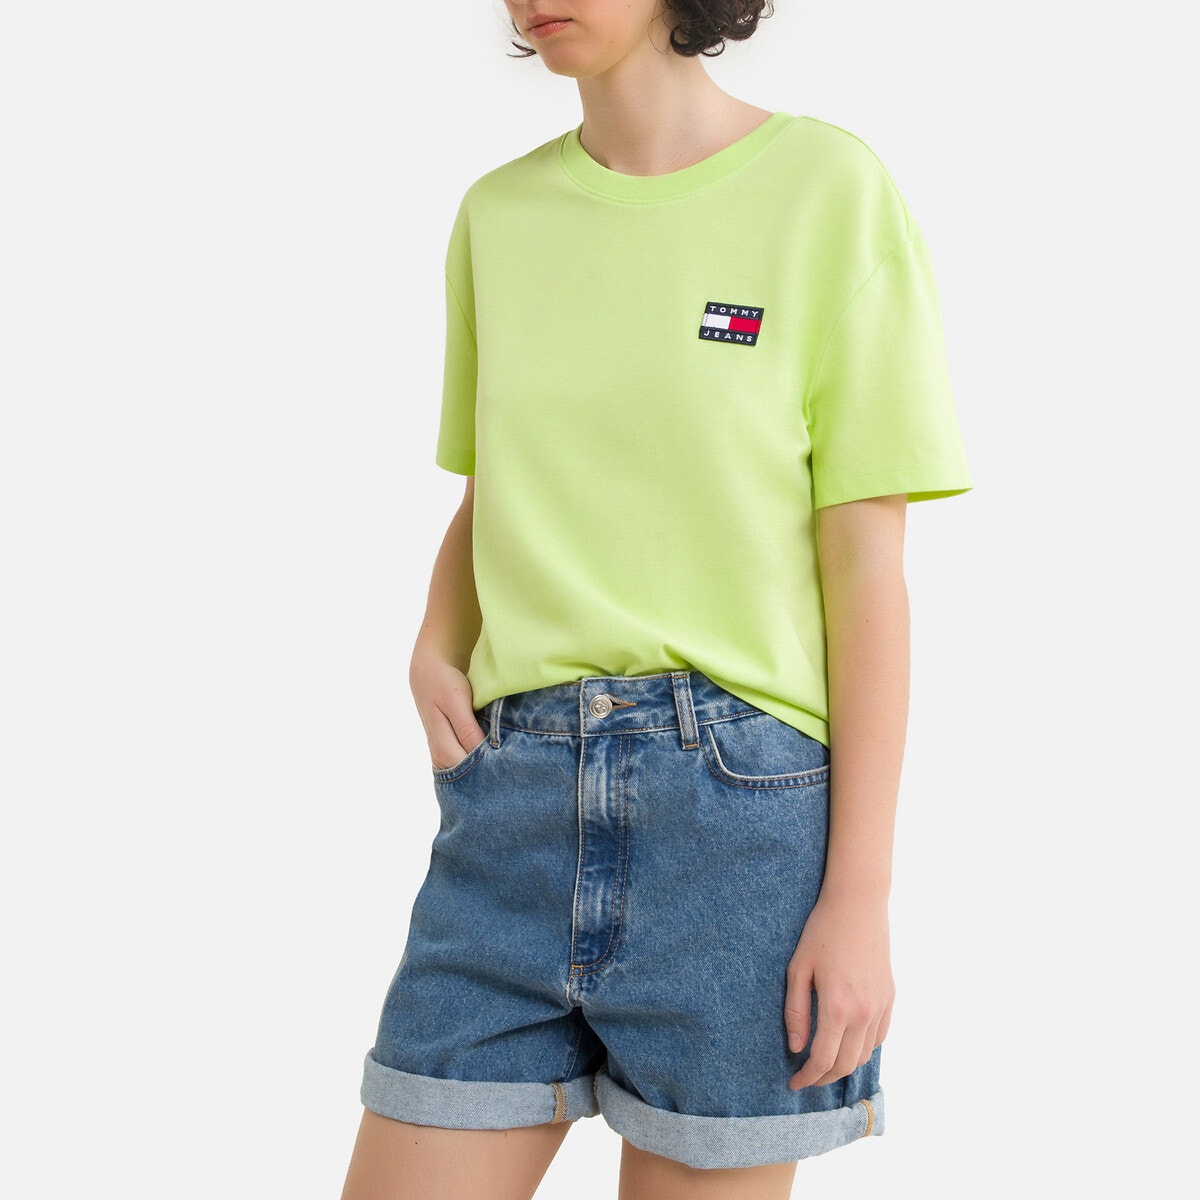 ΓΥΝΑΙΚΑ | Μπλούζες & Πουκάμισα | T-shirts Κοντομάνικη μπλούζα με κεντημένο λογότυπο